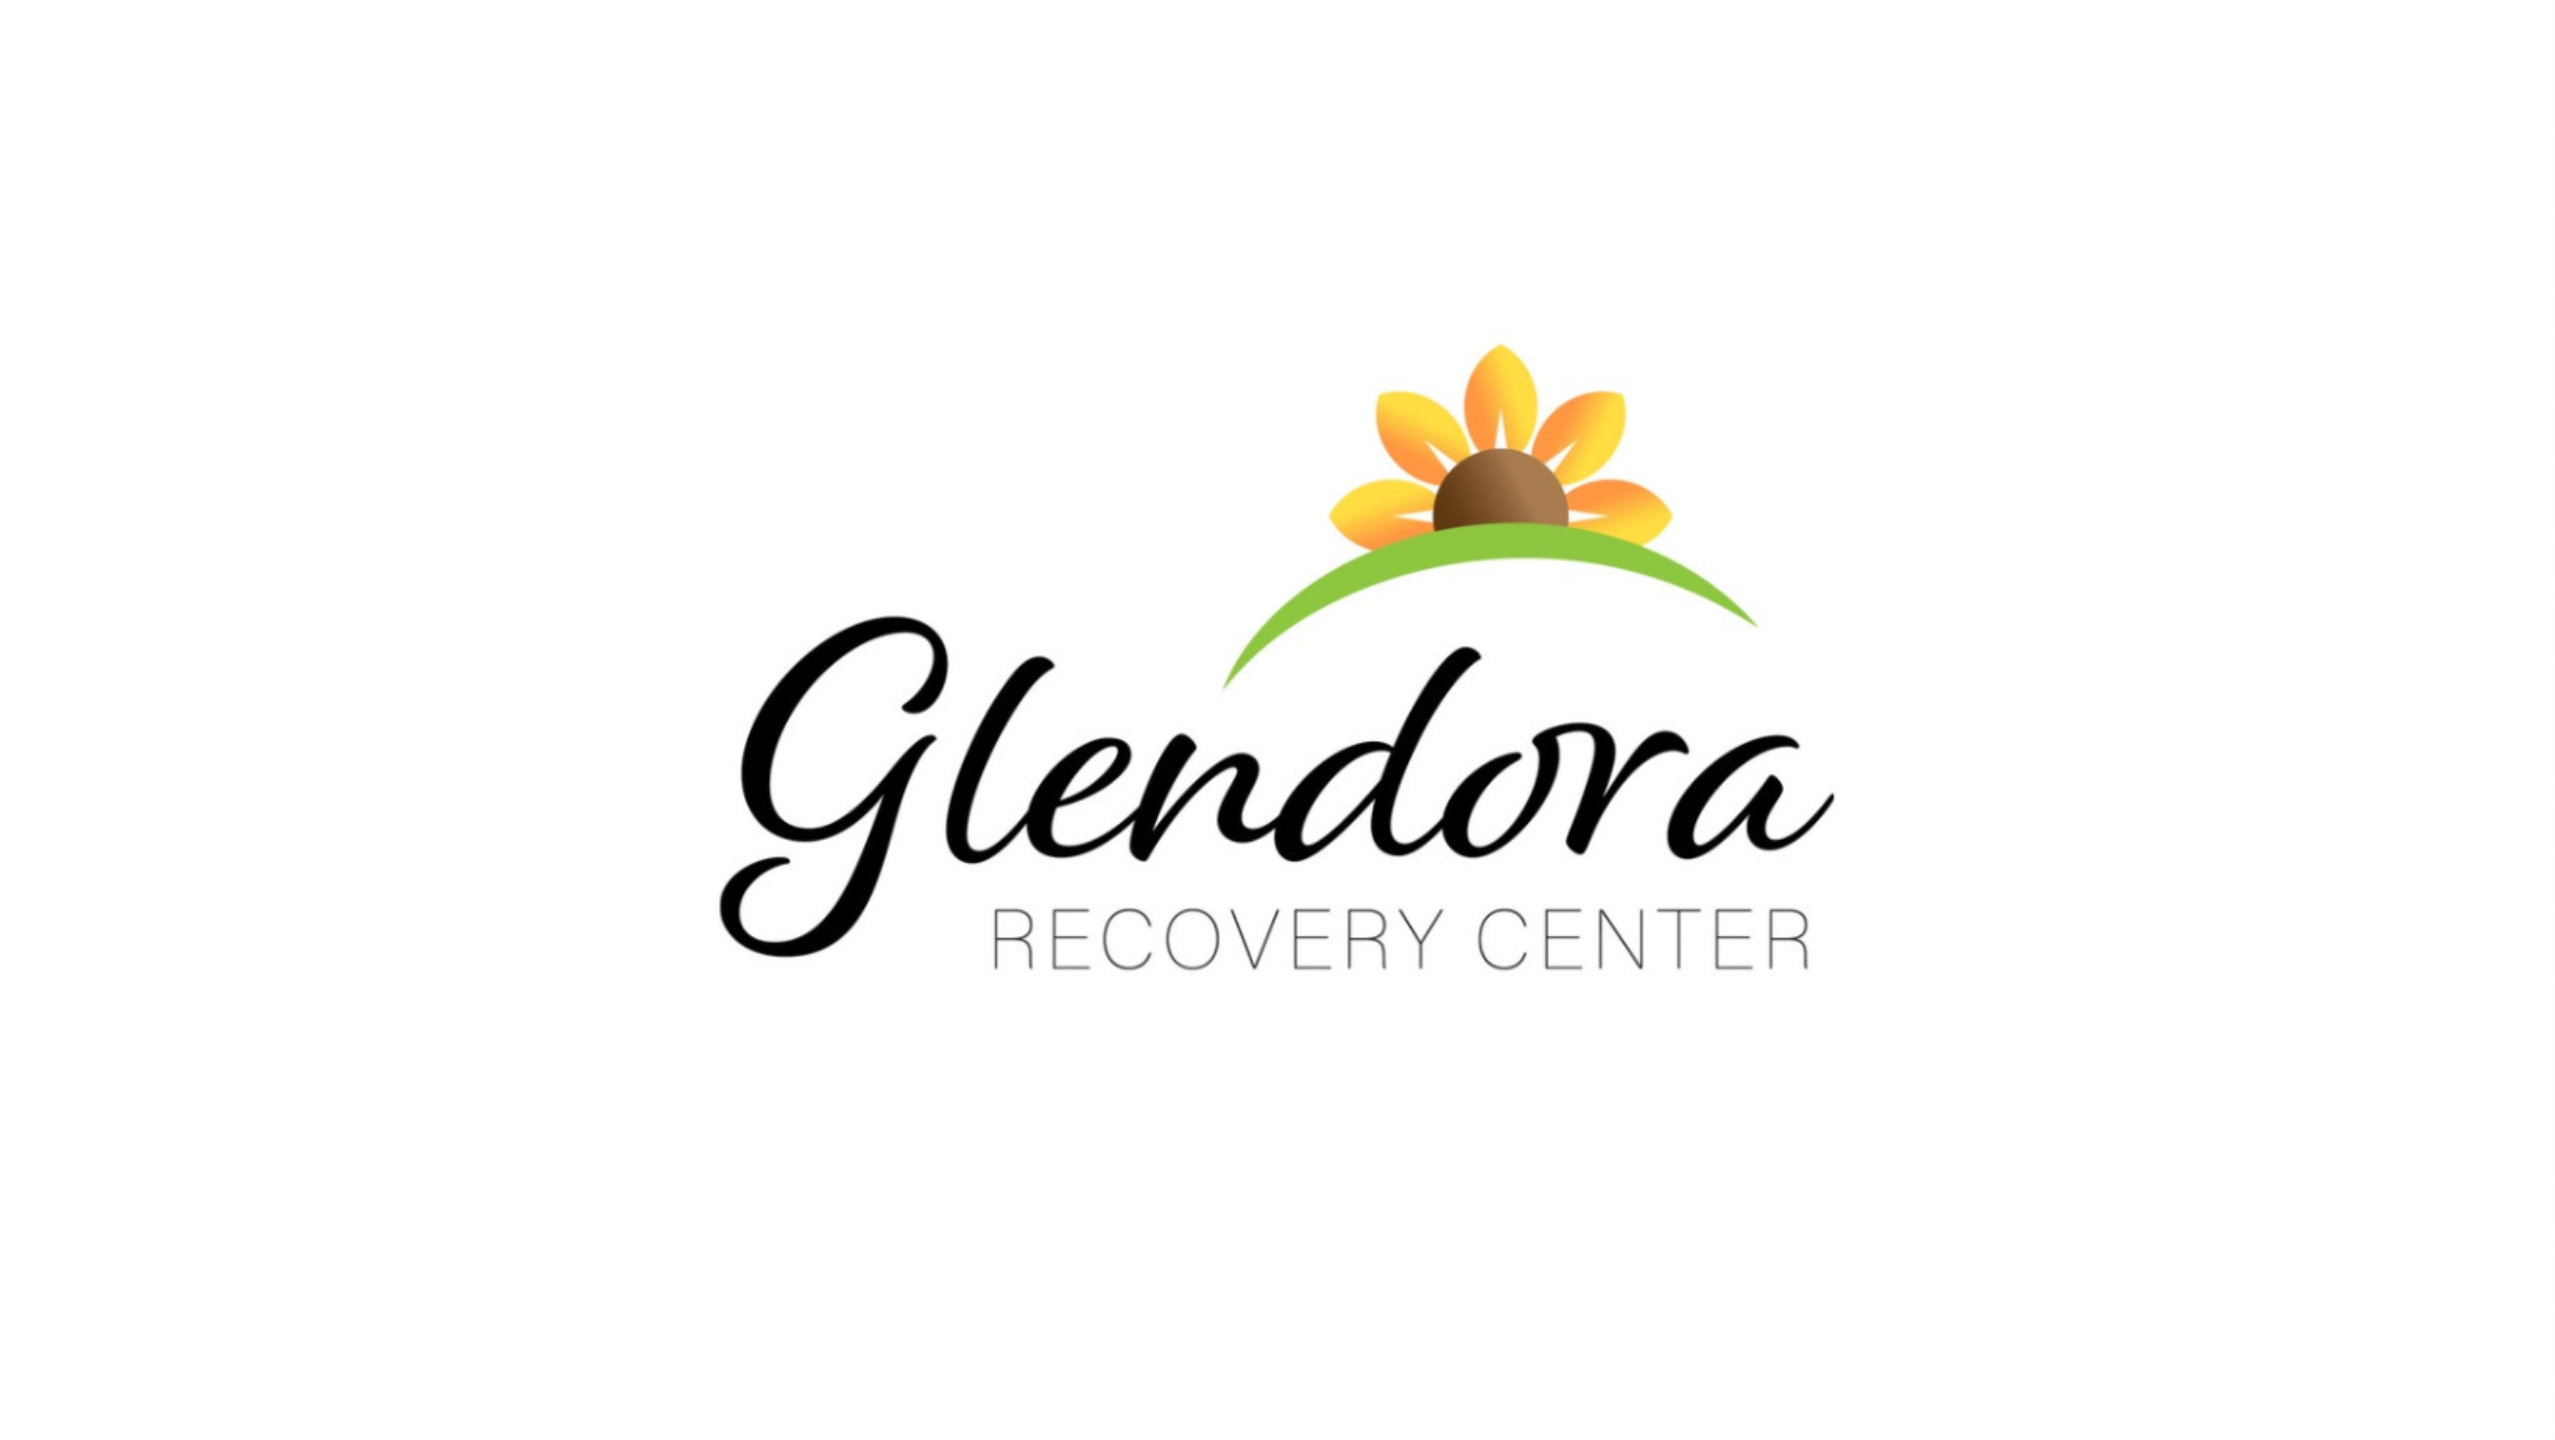 Glendora Recovery Center Logo